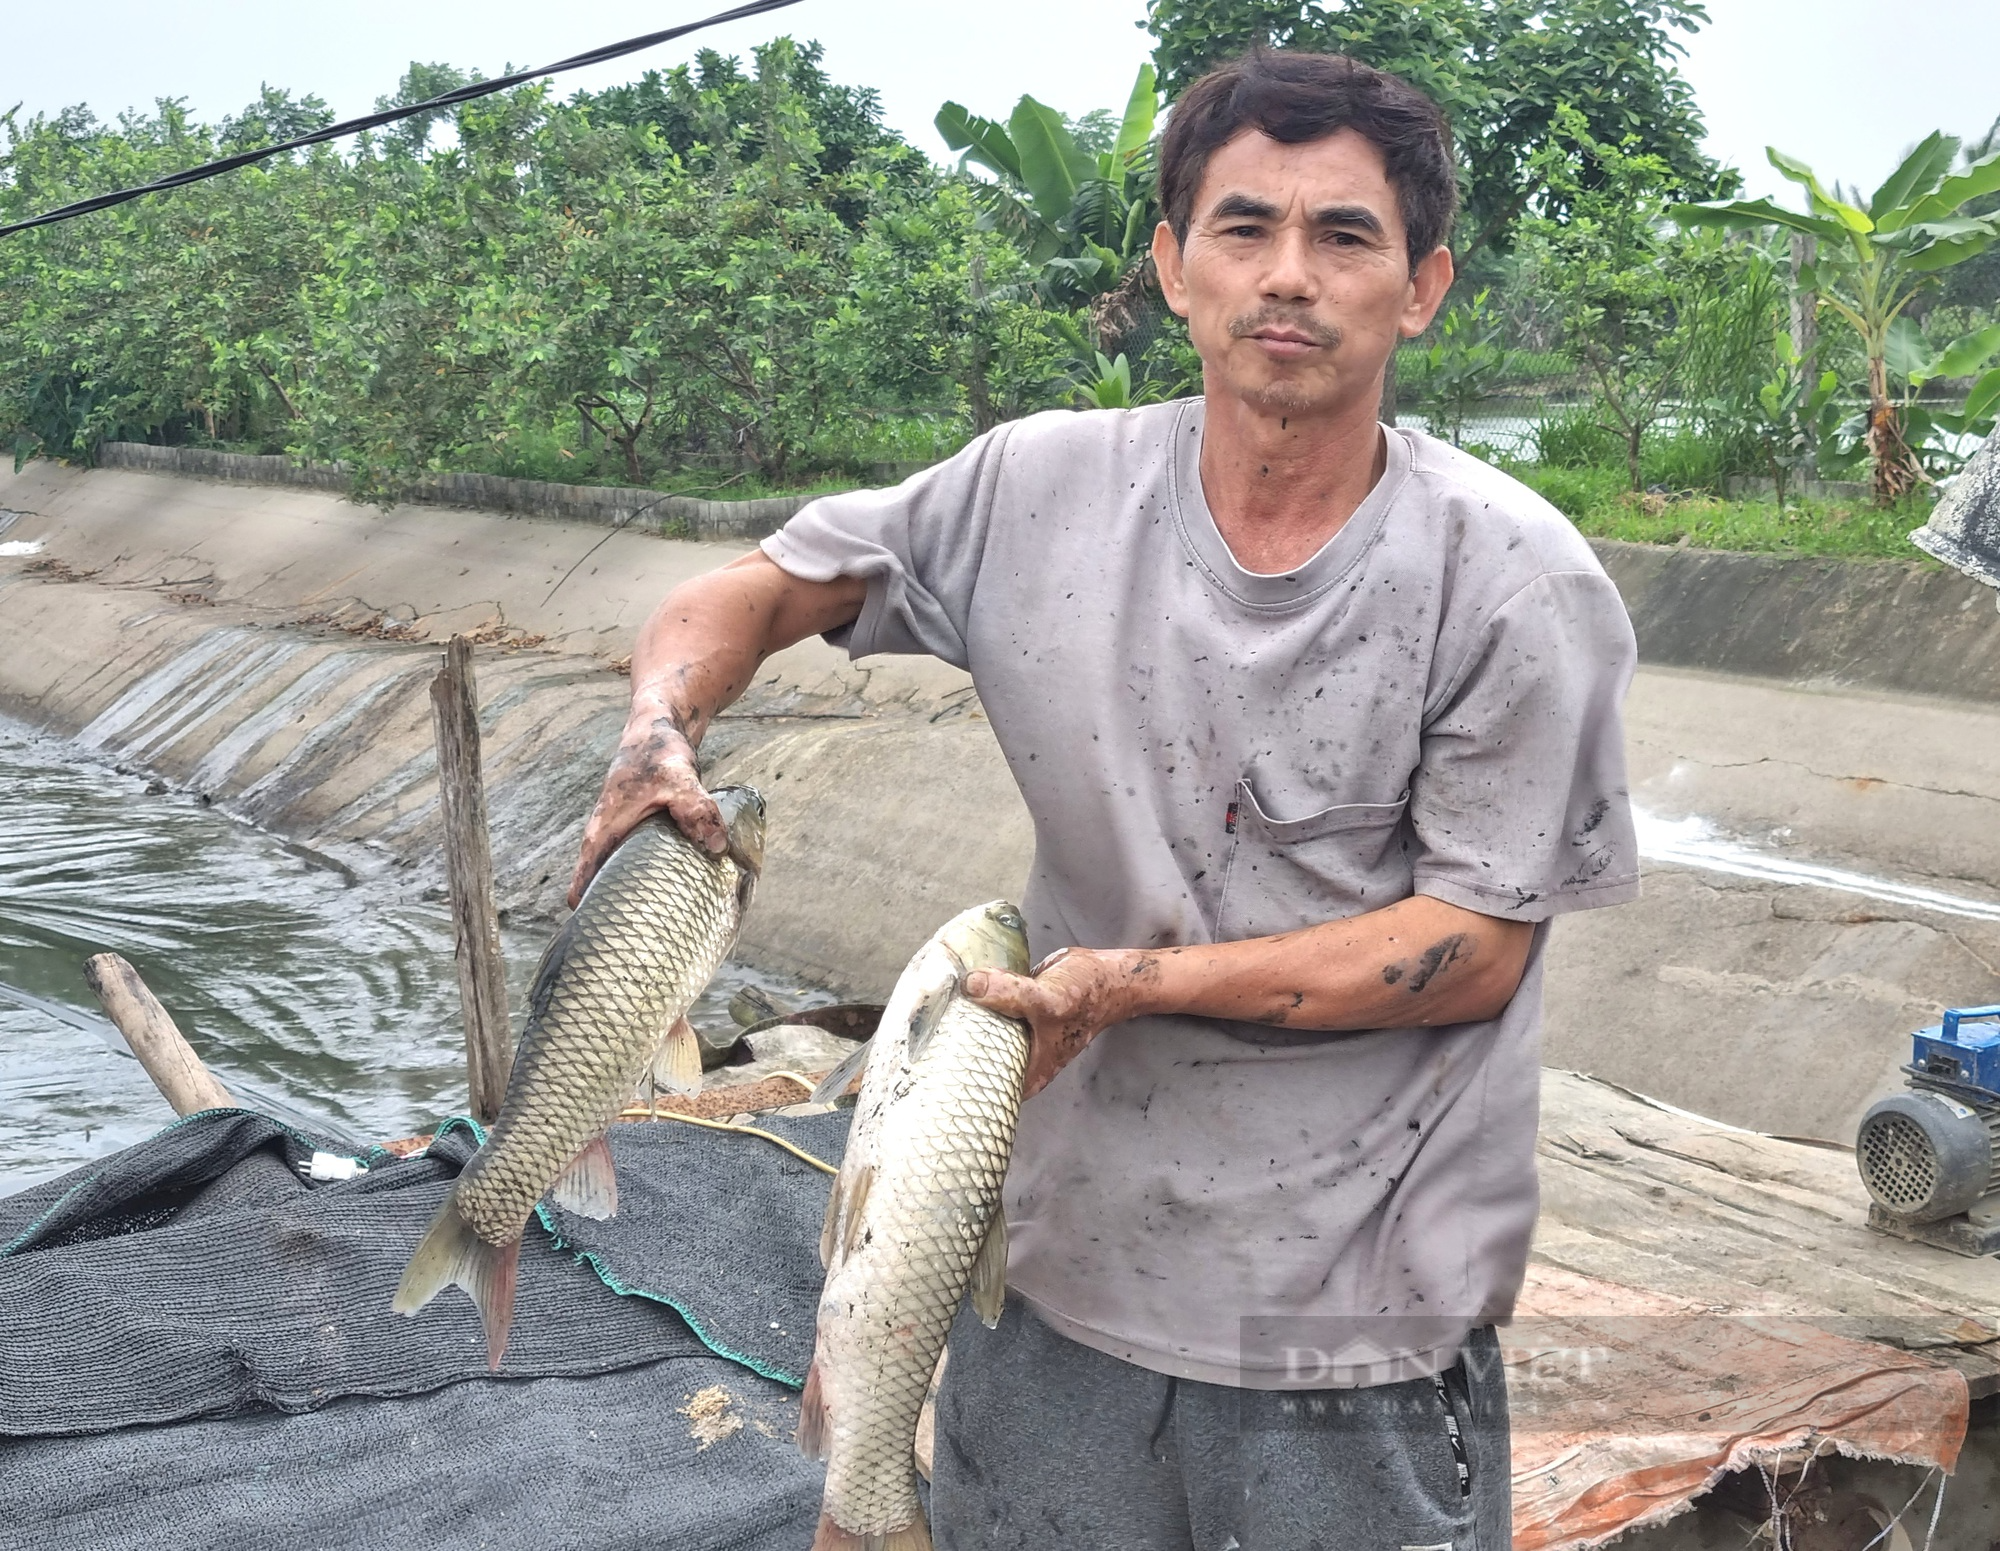 Một hợp tác xã nuôi cá, trồng cây ở Ninh Bình có doanh thu 20 tỉ đồng/năm - Ảnh 6.